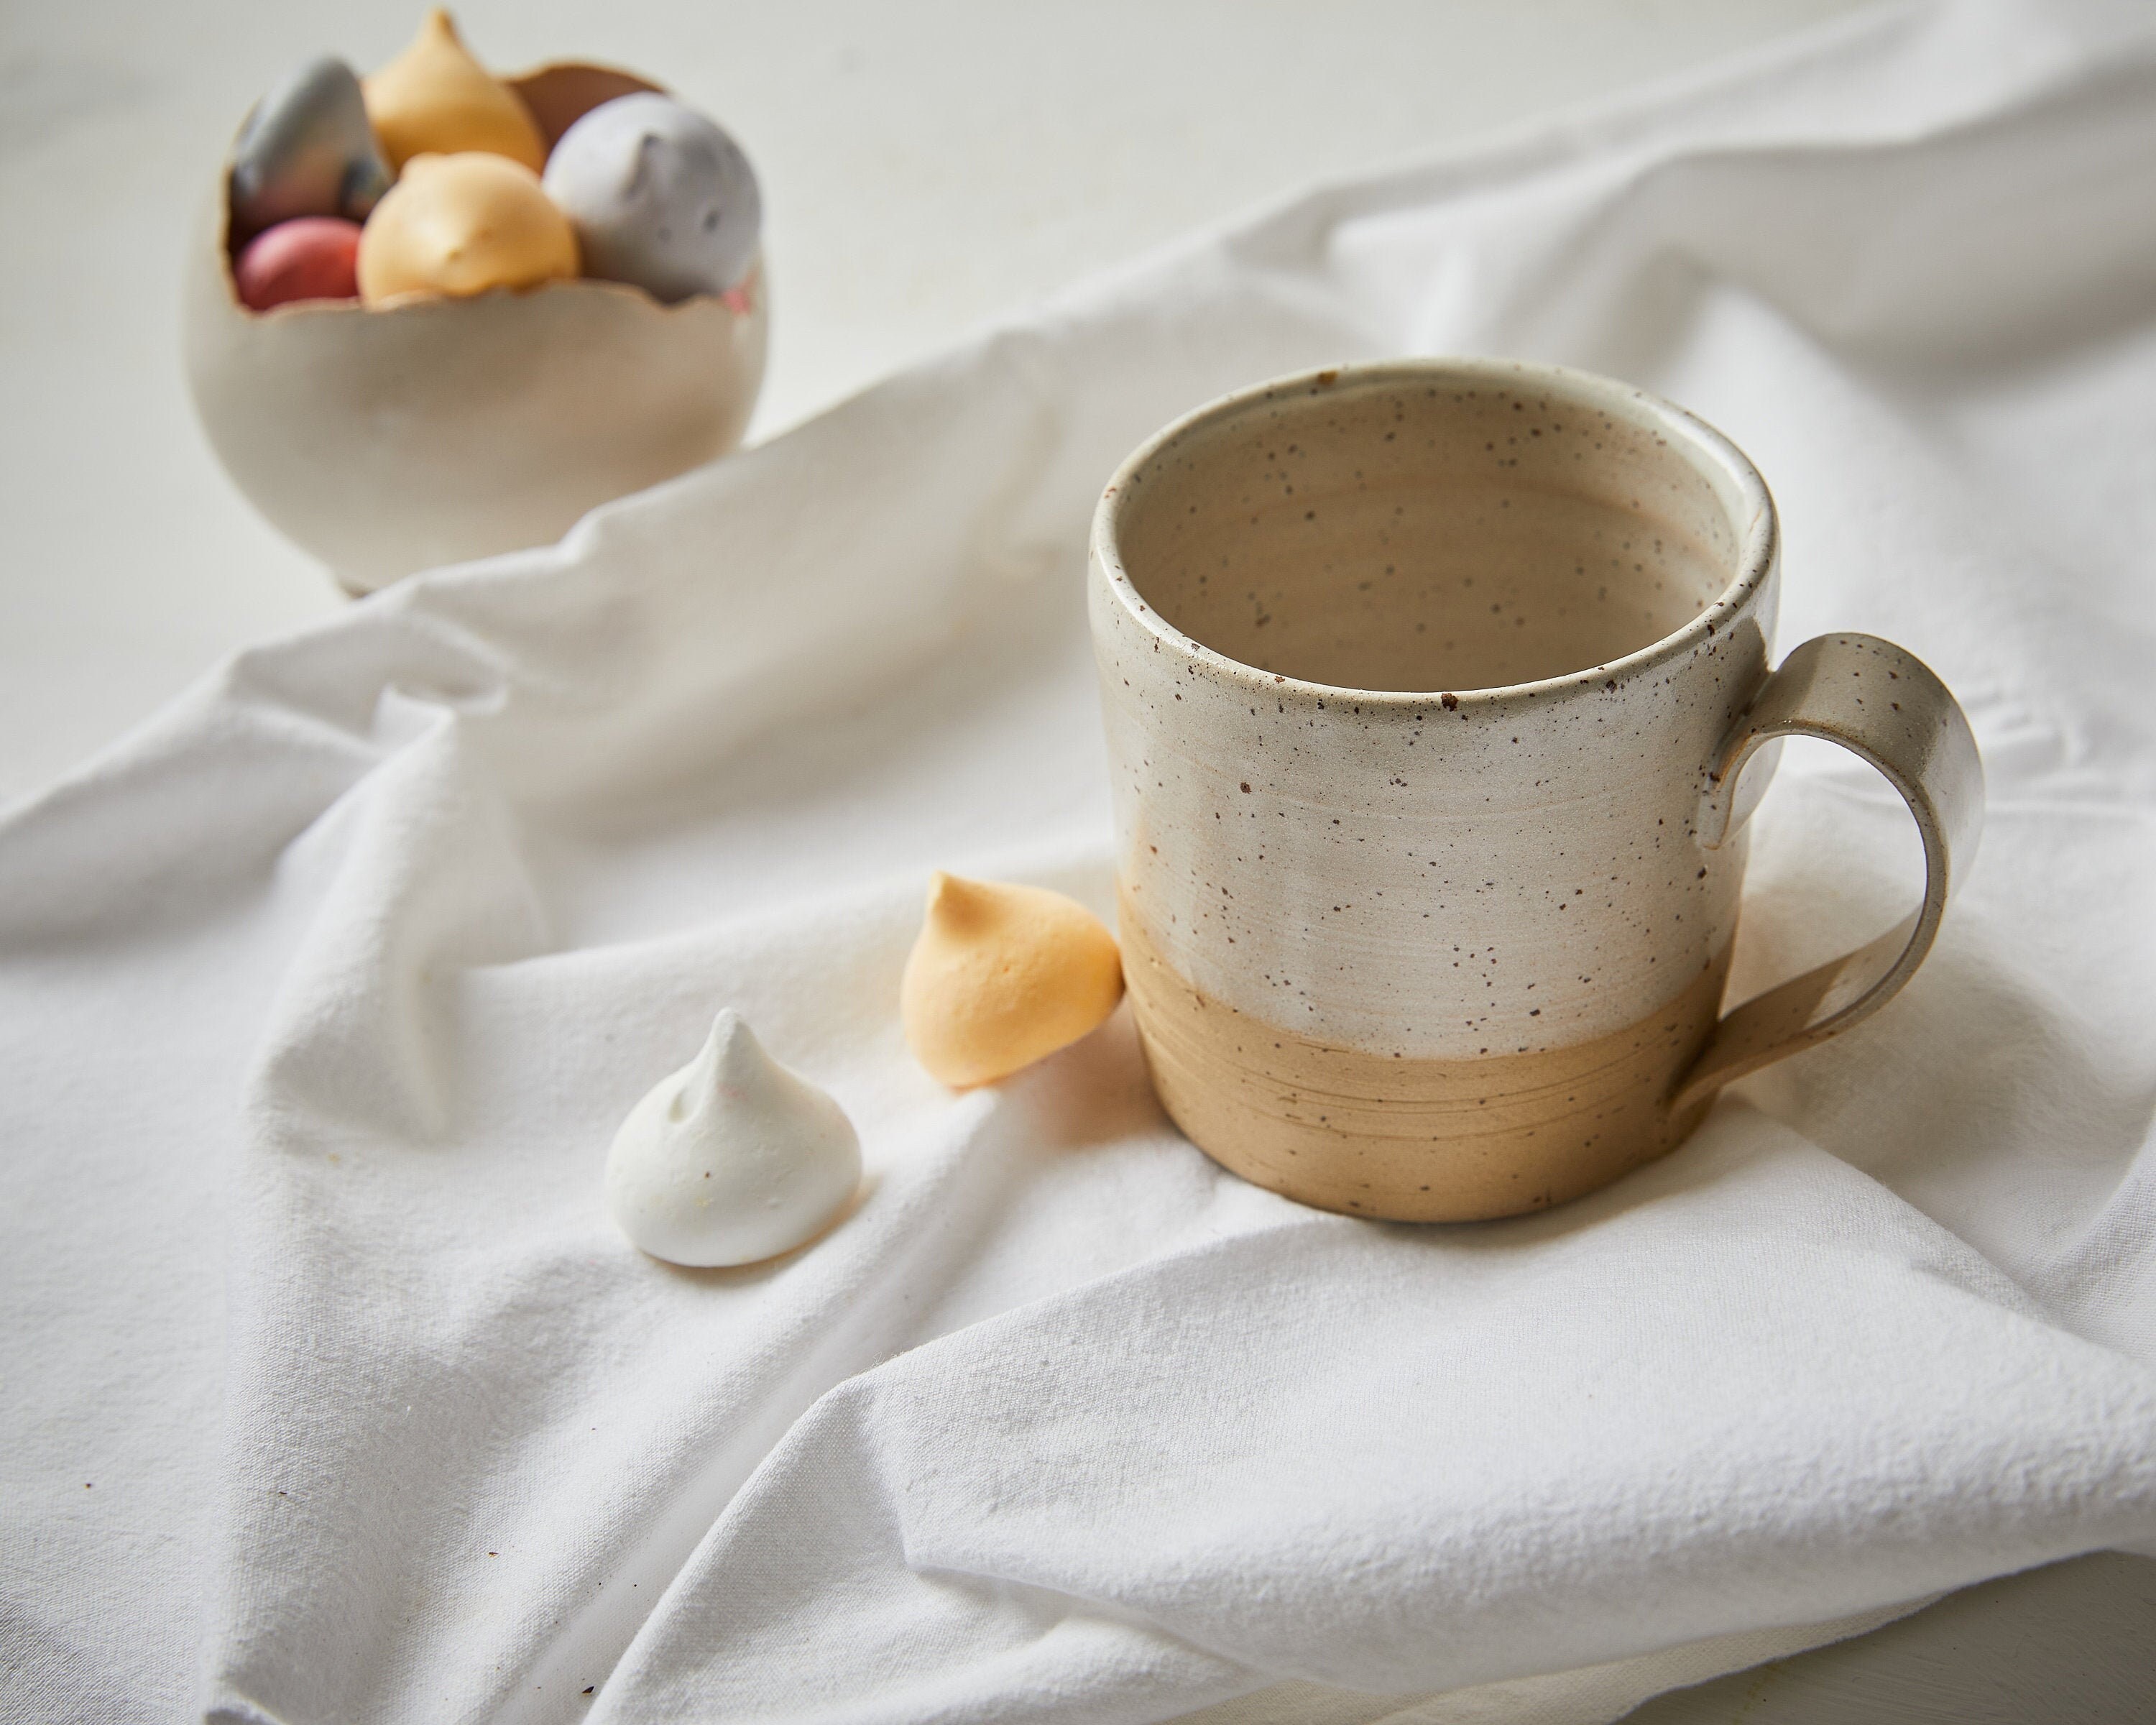 Tasse en céramique pour café et thé Tahoe avec couvercle en bois